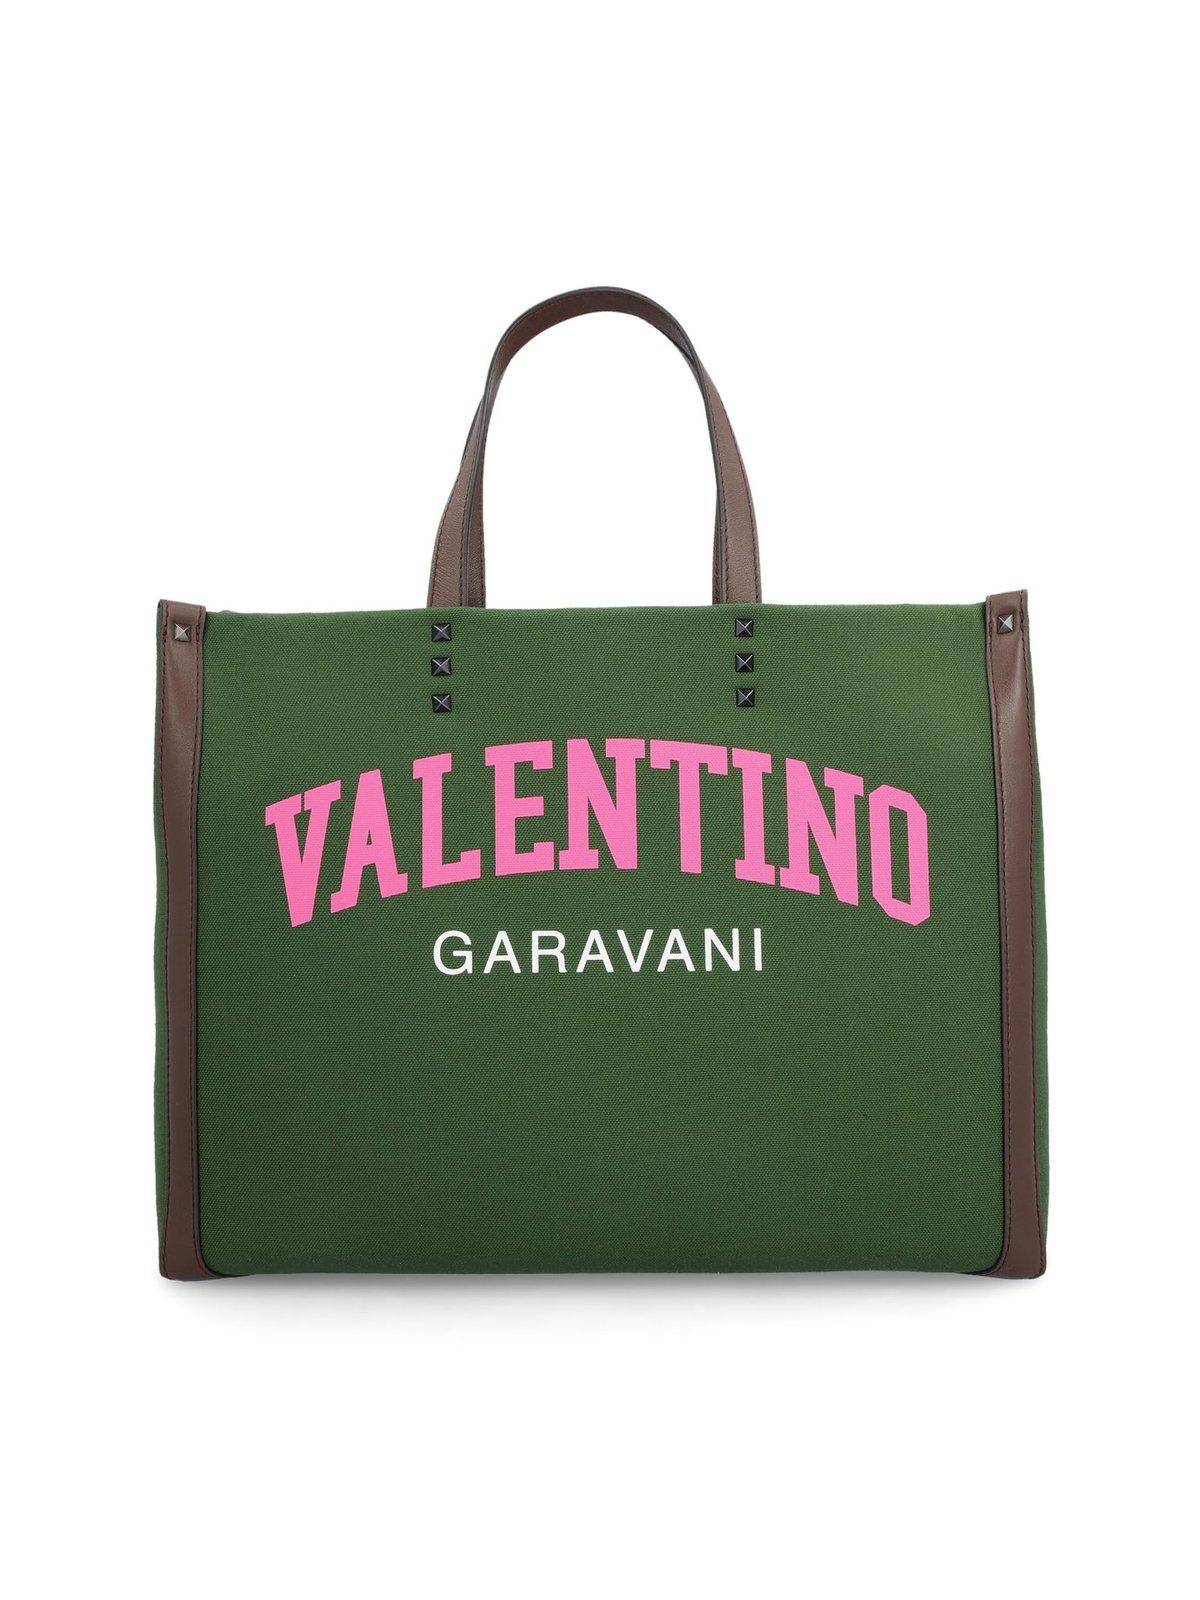 Valentino Garavani University Tote Bag